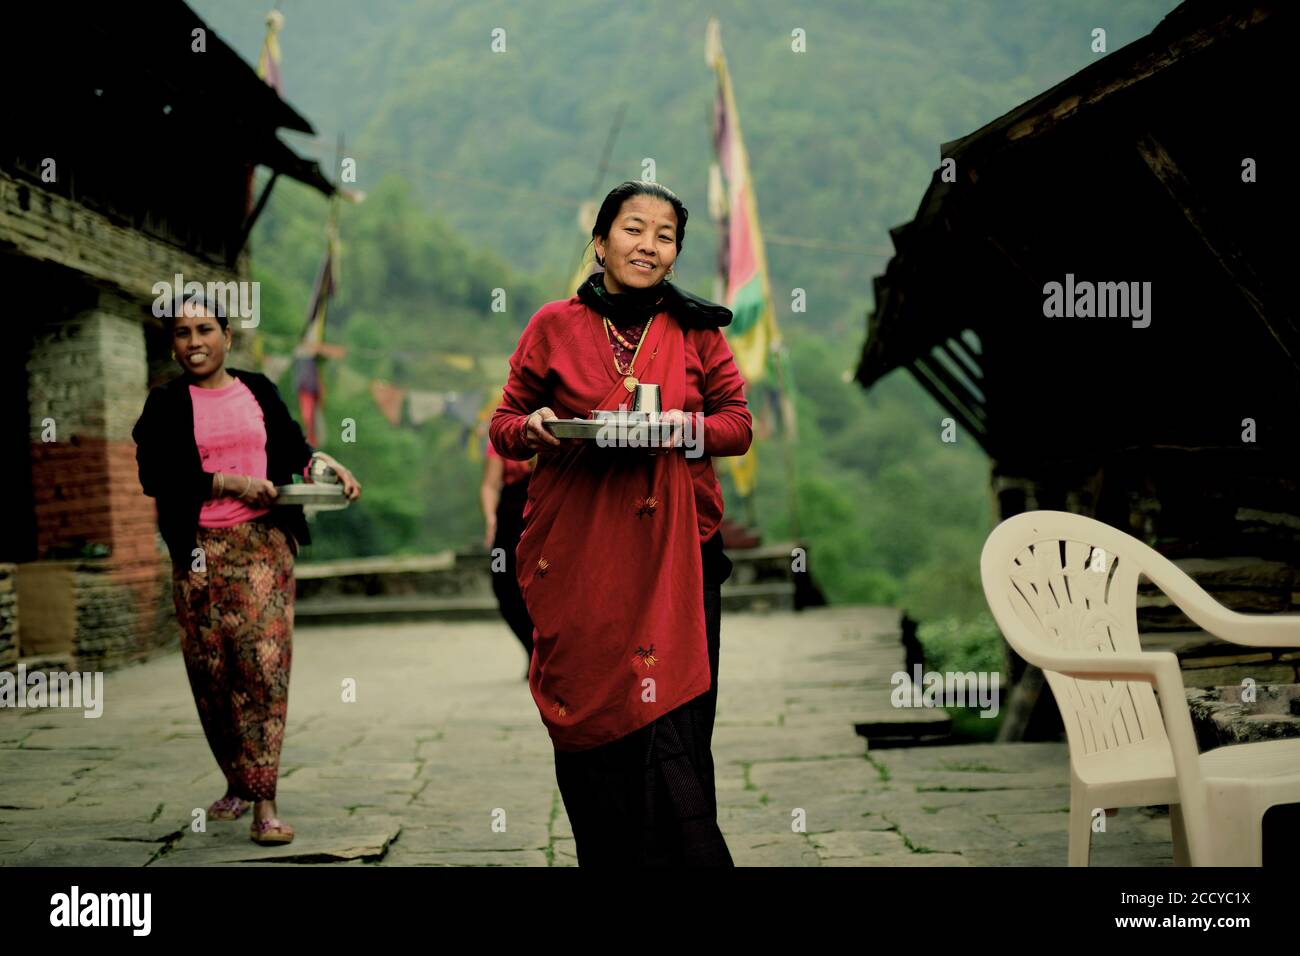 Des villageois apportent des repas aux visiteurs du village de Sidhane dans la région montagneuse de Panchase, Kaski, Gandaki Pradesh, Népal. Banque D'Images